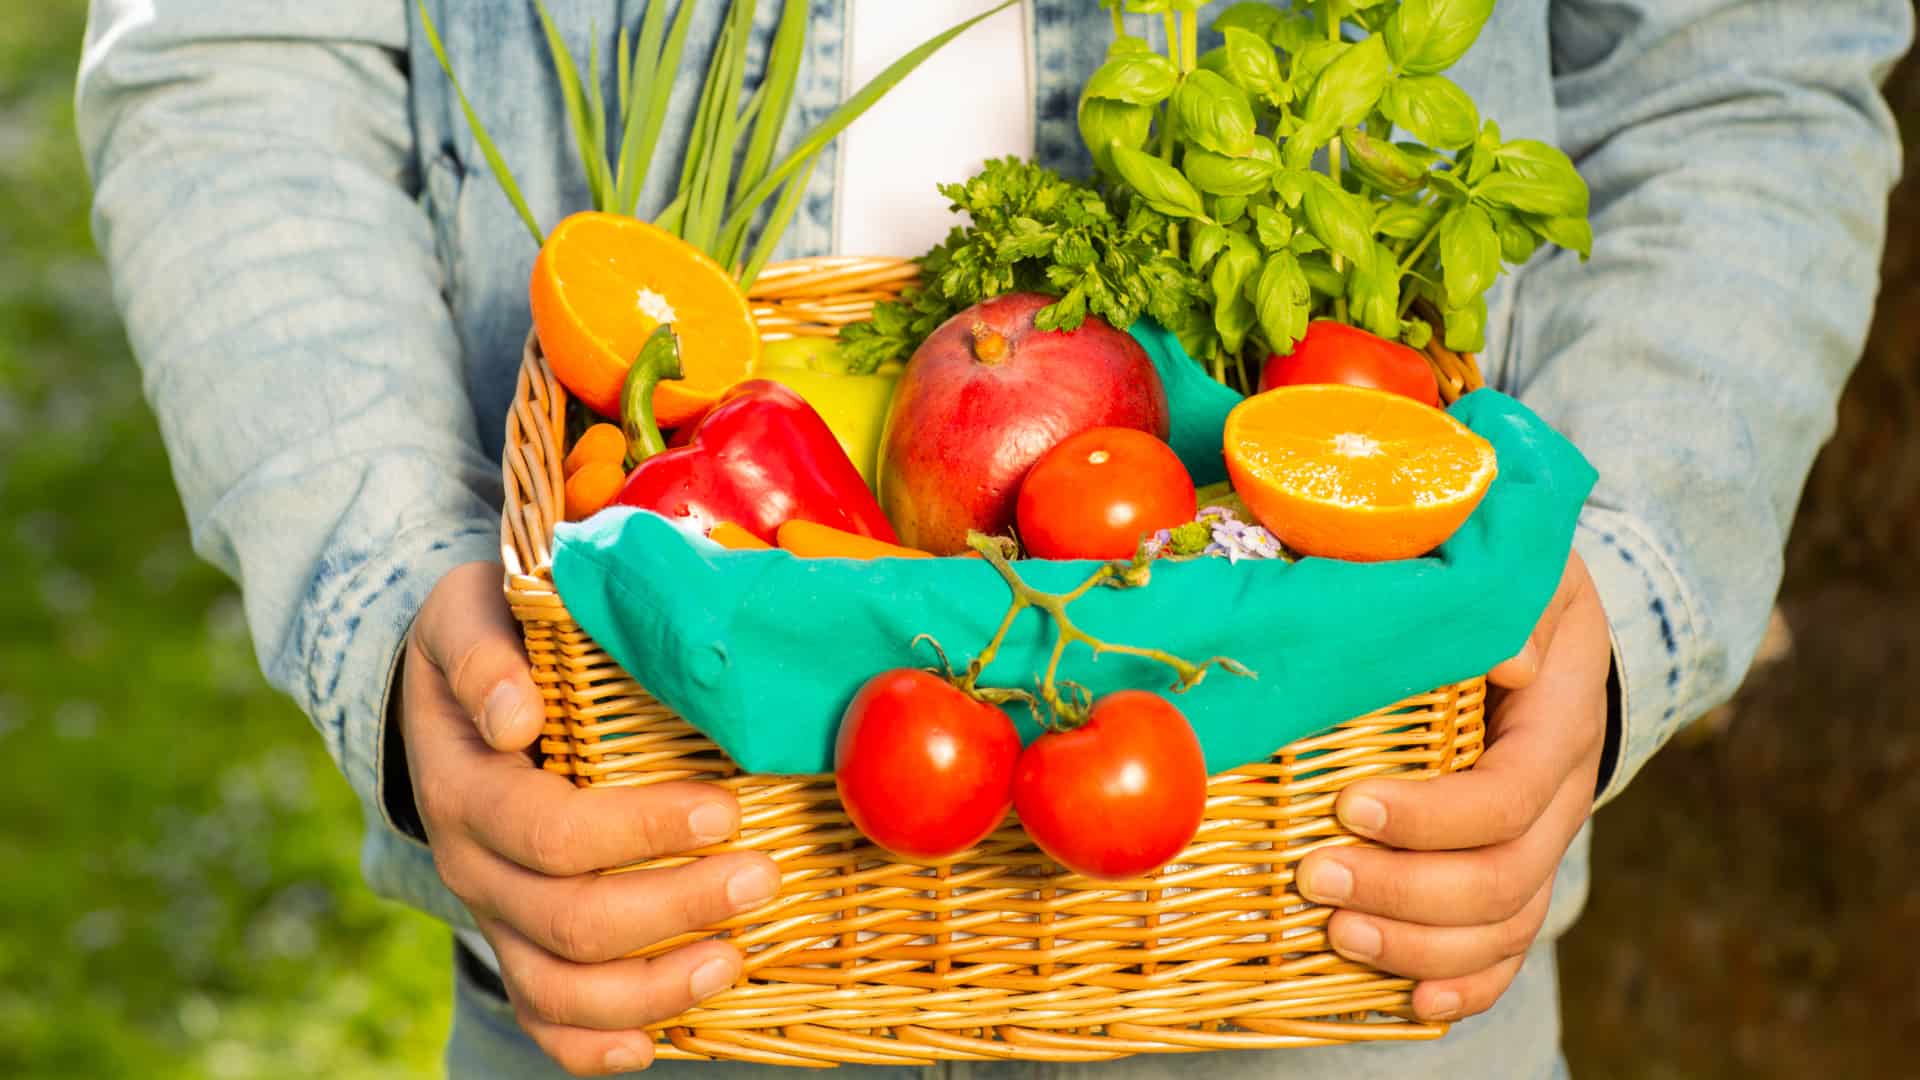 gyümölcsök és zöldségek a szív egészségéért